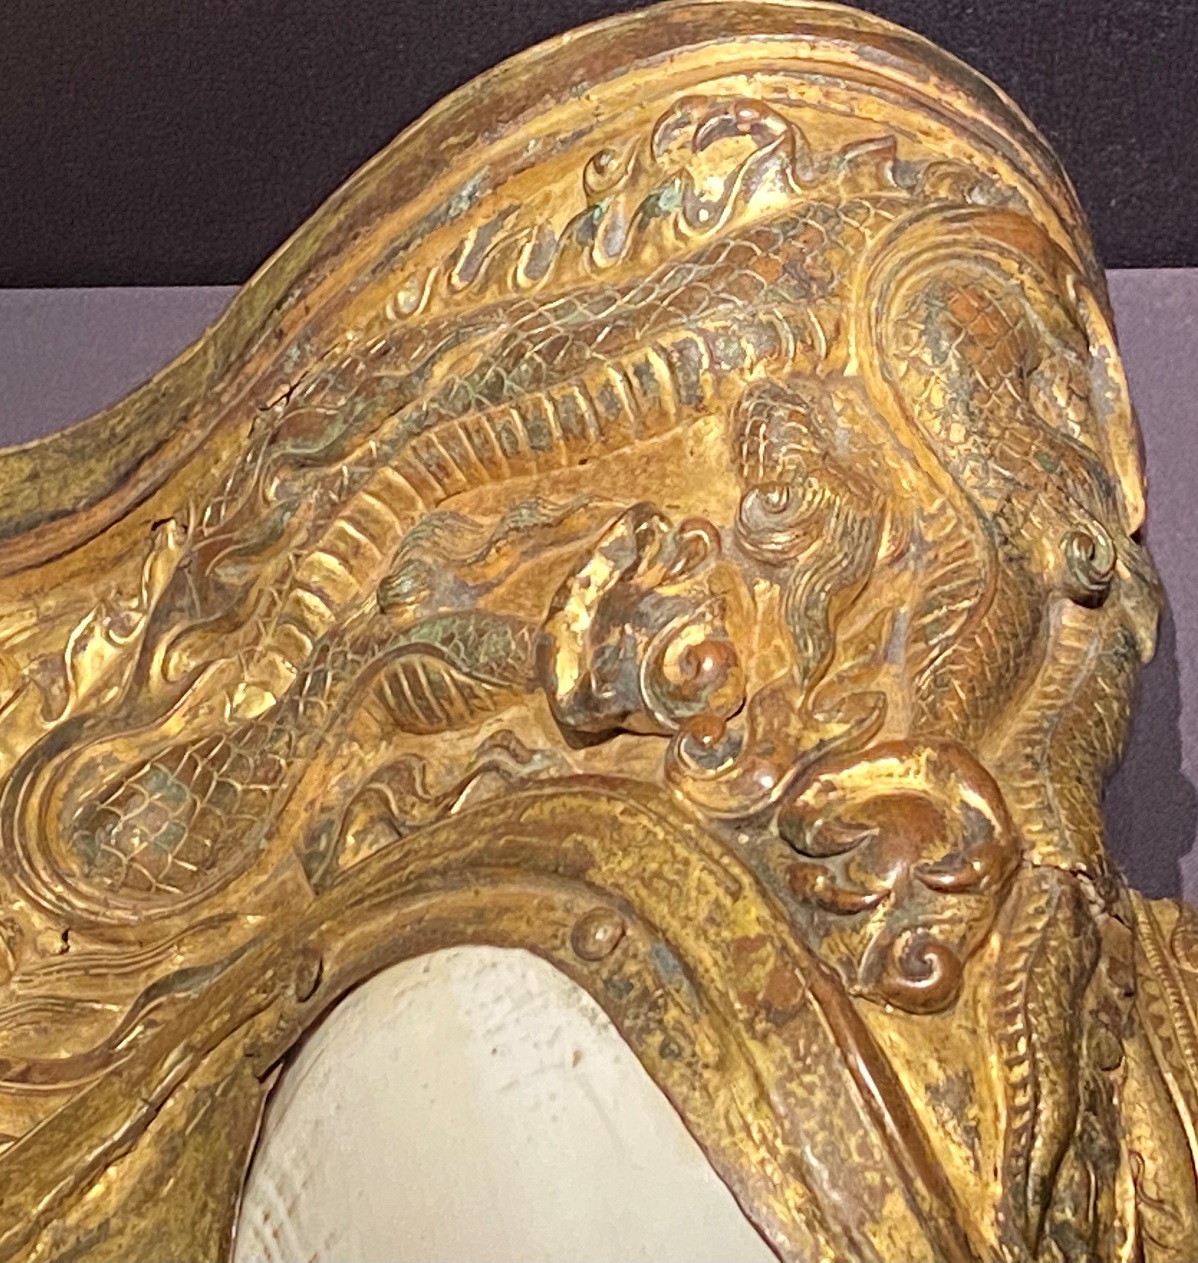 銅鎏金鑲翅法螺-特別展【七宝玲瓏-ヒマラヤからの芸術珍品】-金沙遺跡博物館-成都 